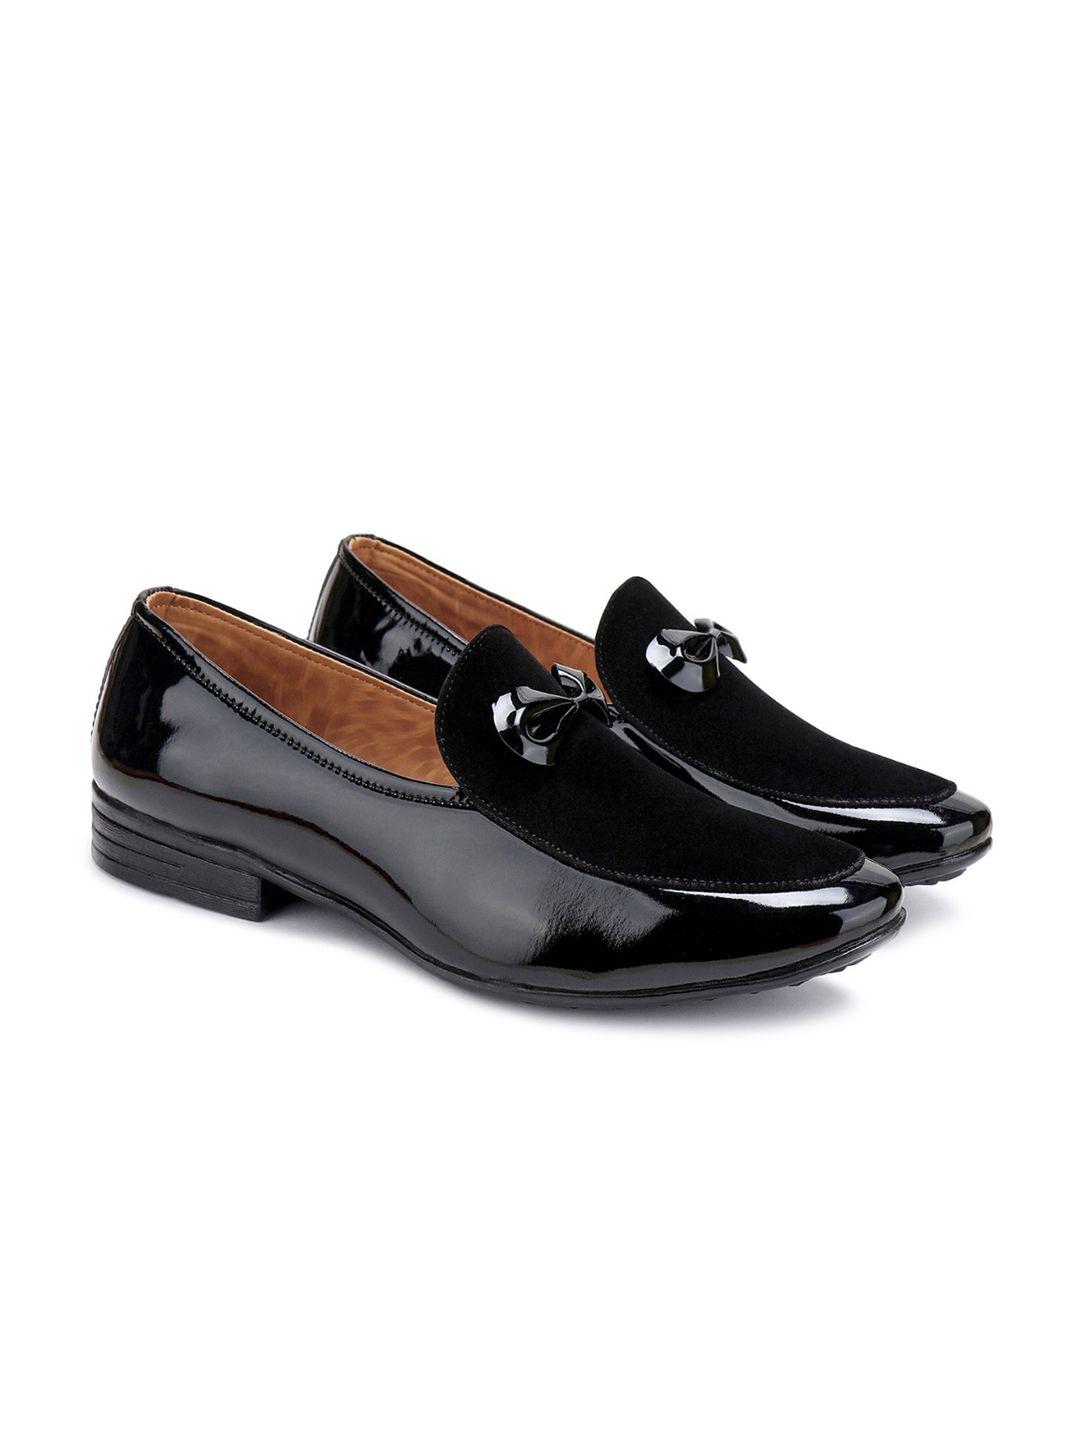 bersache-men-formal-loafers